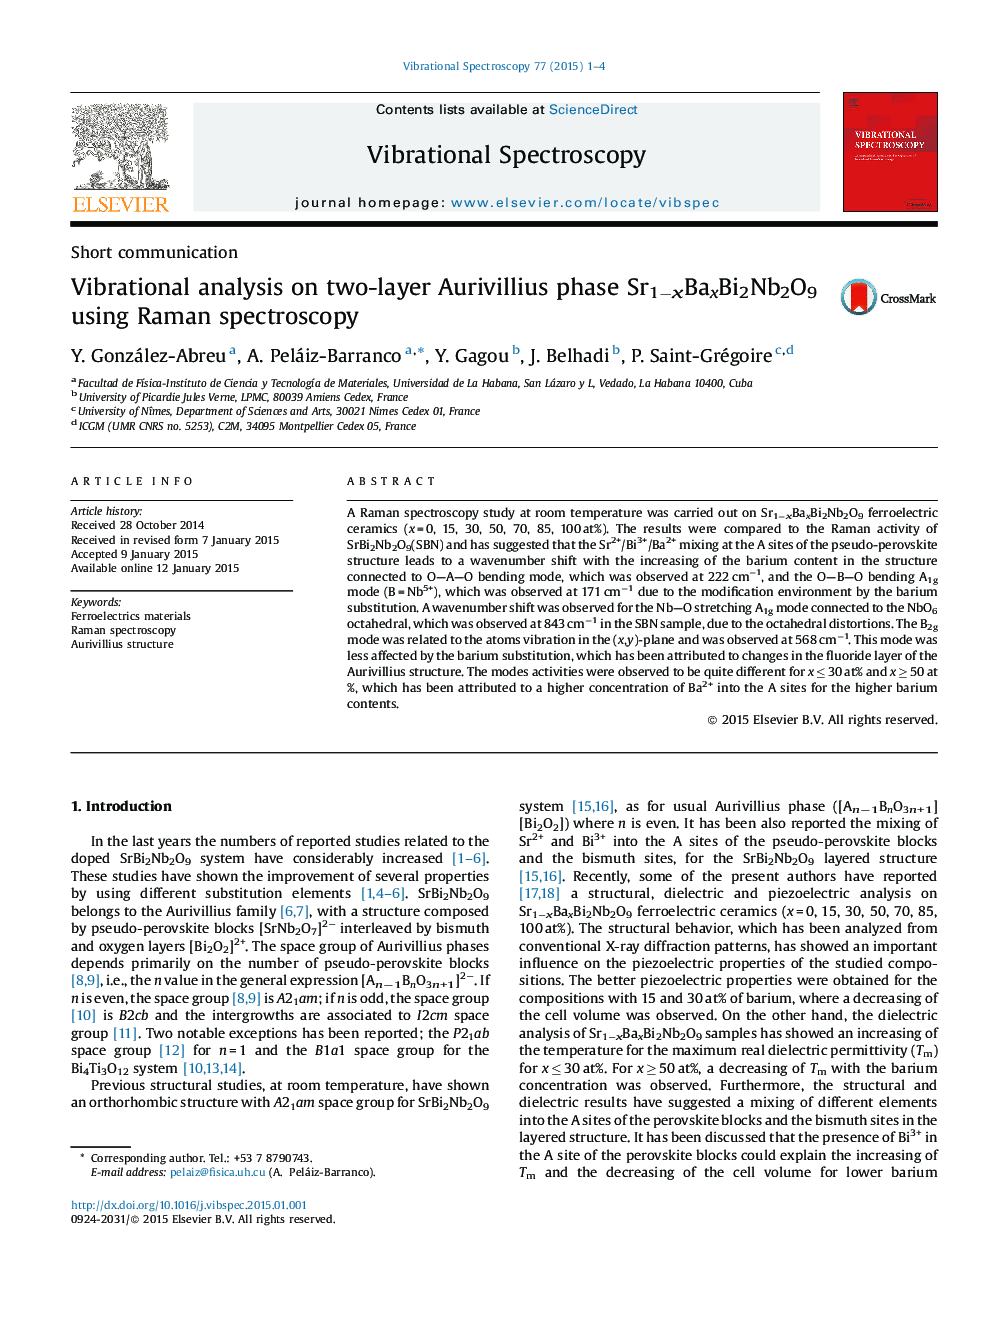 Vibrational analysis on two-layer Aurivillius phase Sr1−xBaxBi2Nb2O9 using Raman spectroscopy